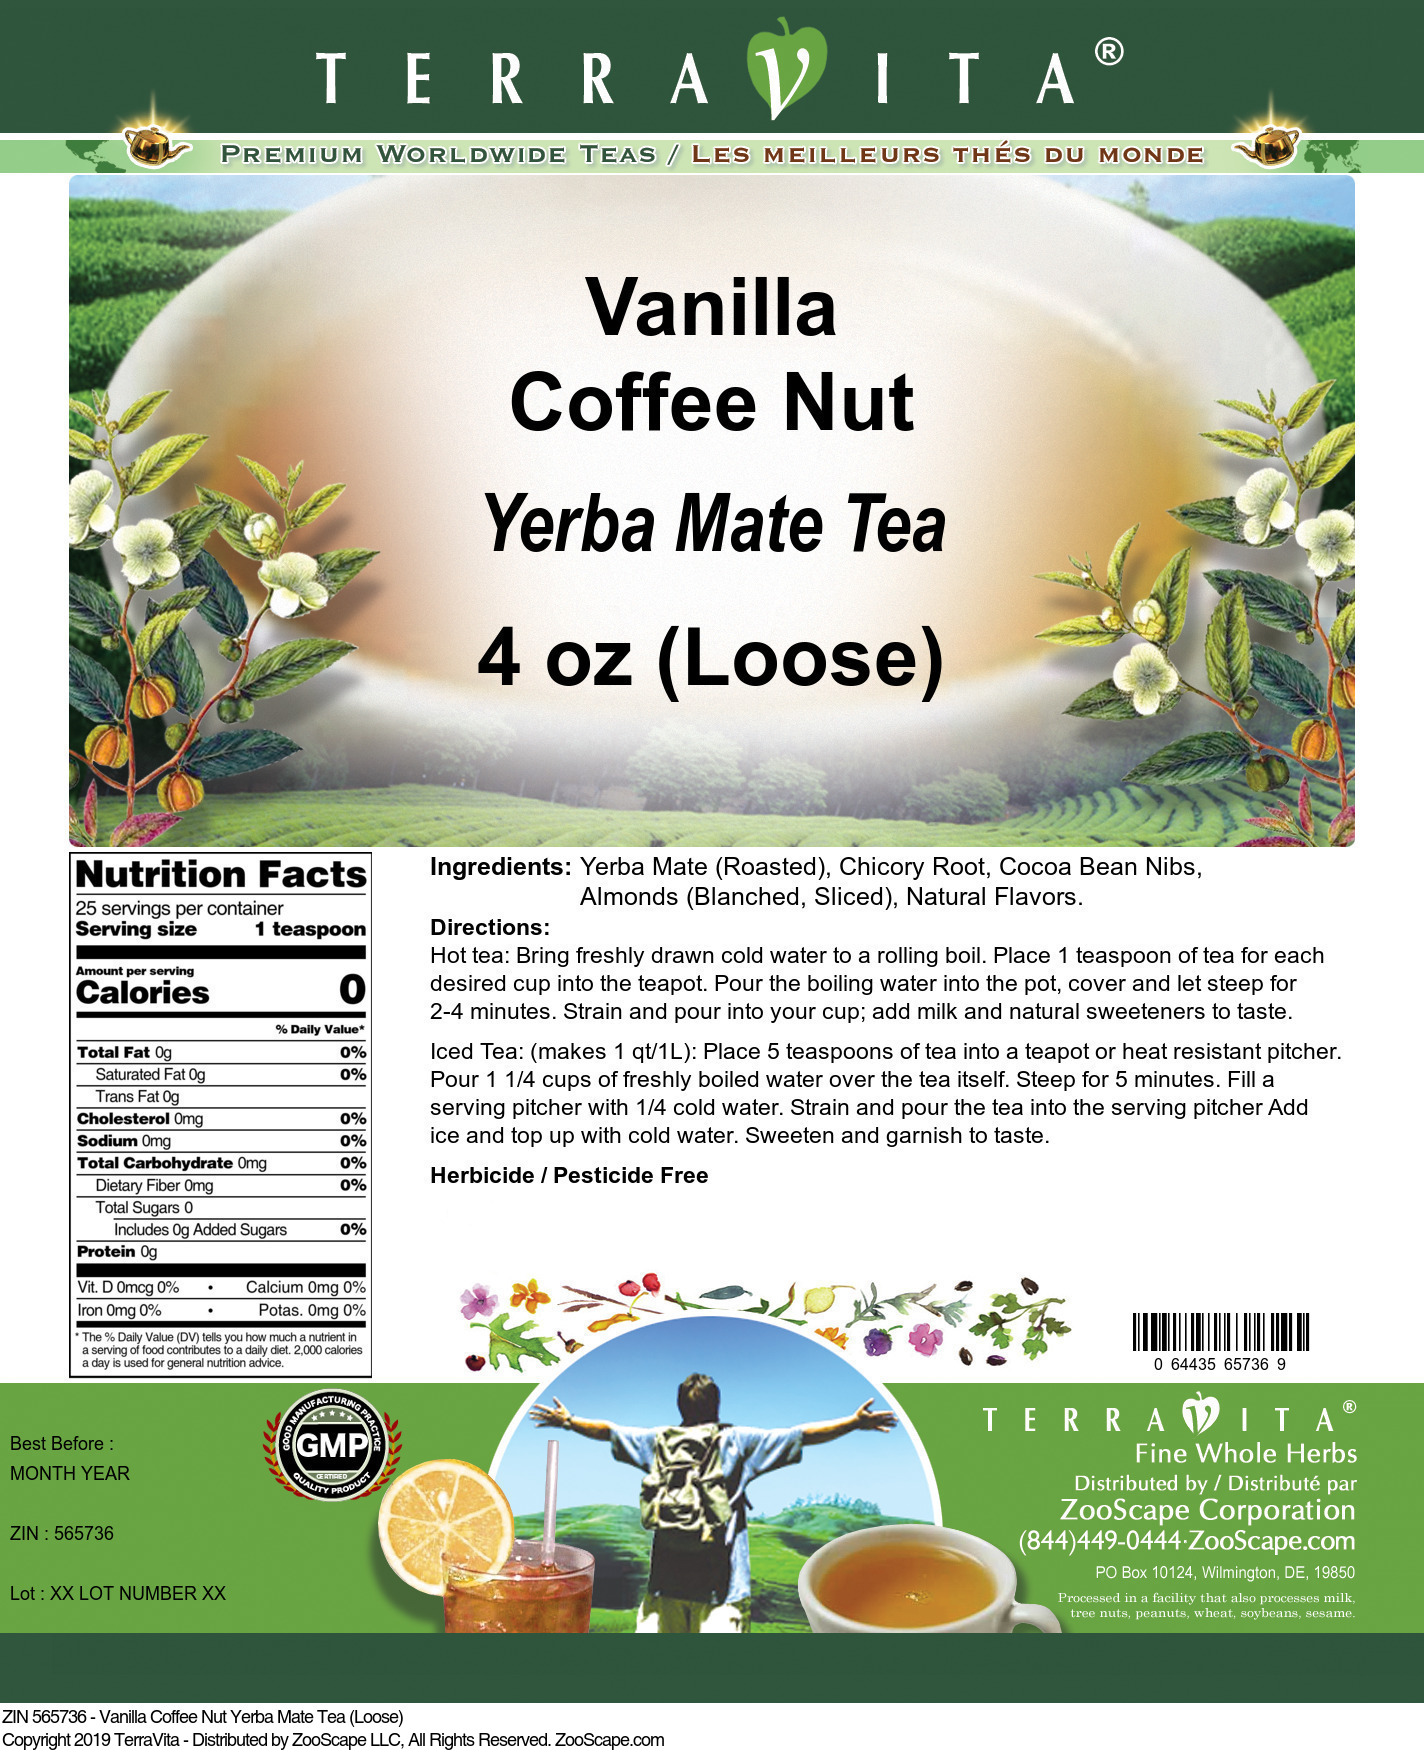 Vanilla Coffee Nut Yerba Mate Tea (Loose) - Label